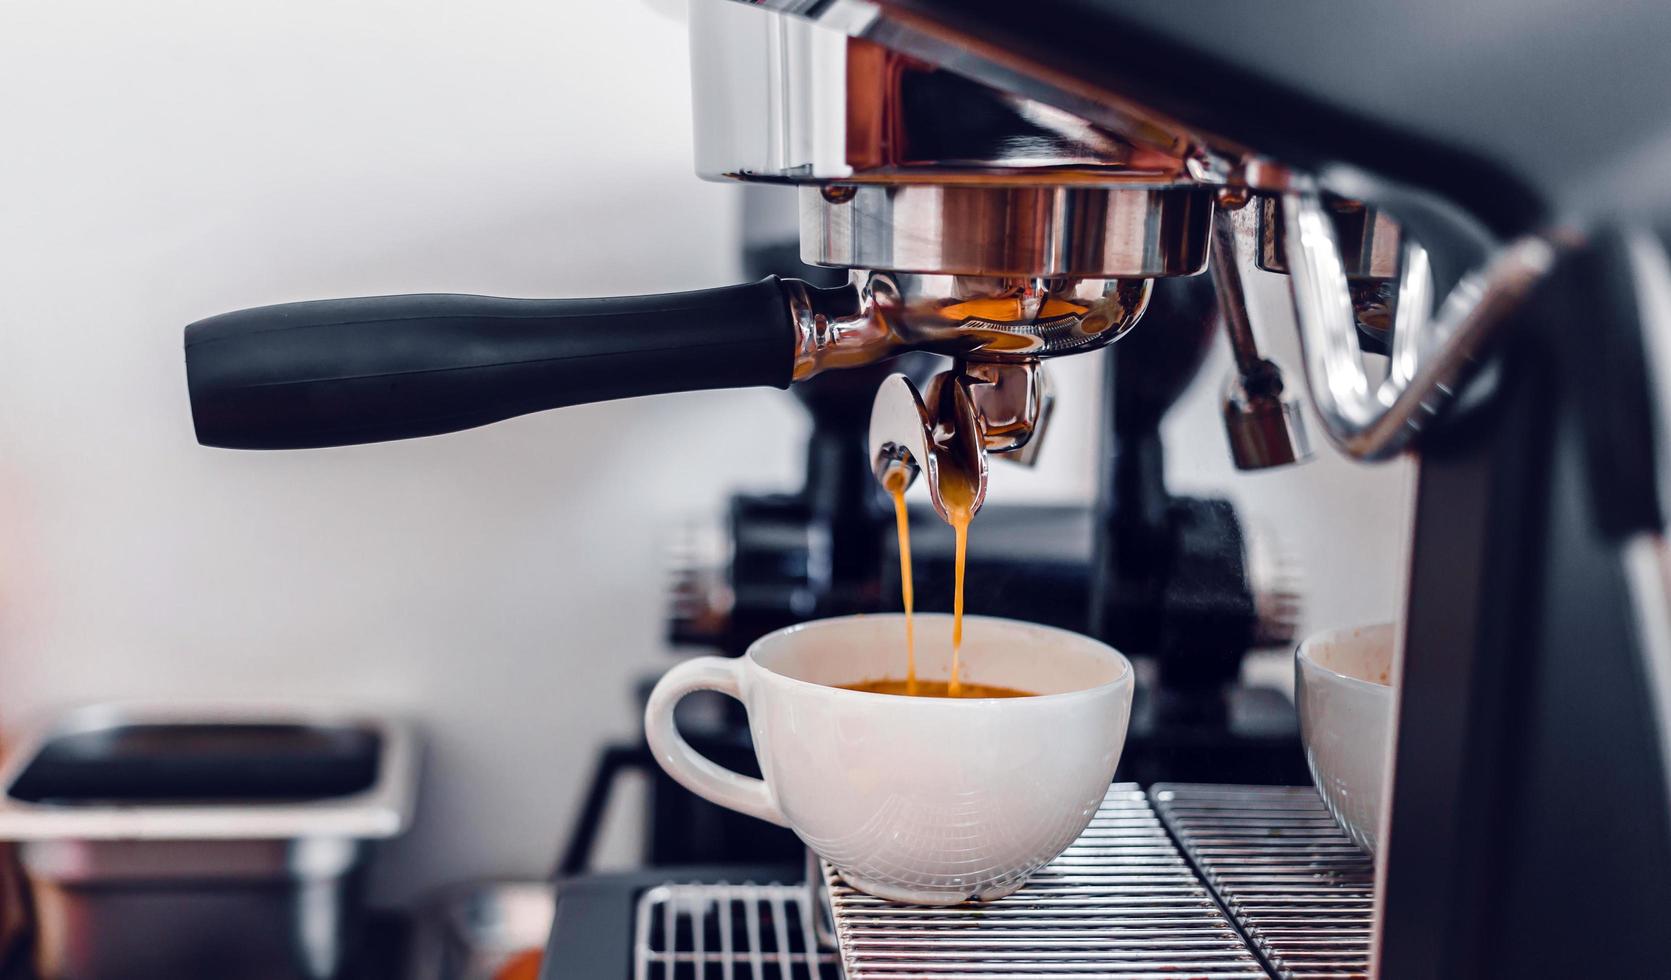 Kaffeeextraktion aus der Kaffeemaschine mit einem Siebträger, der Kaffee in eine Tasse gießt, Espresso aus der Kaffeemaschine im Café foto